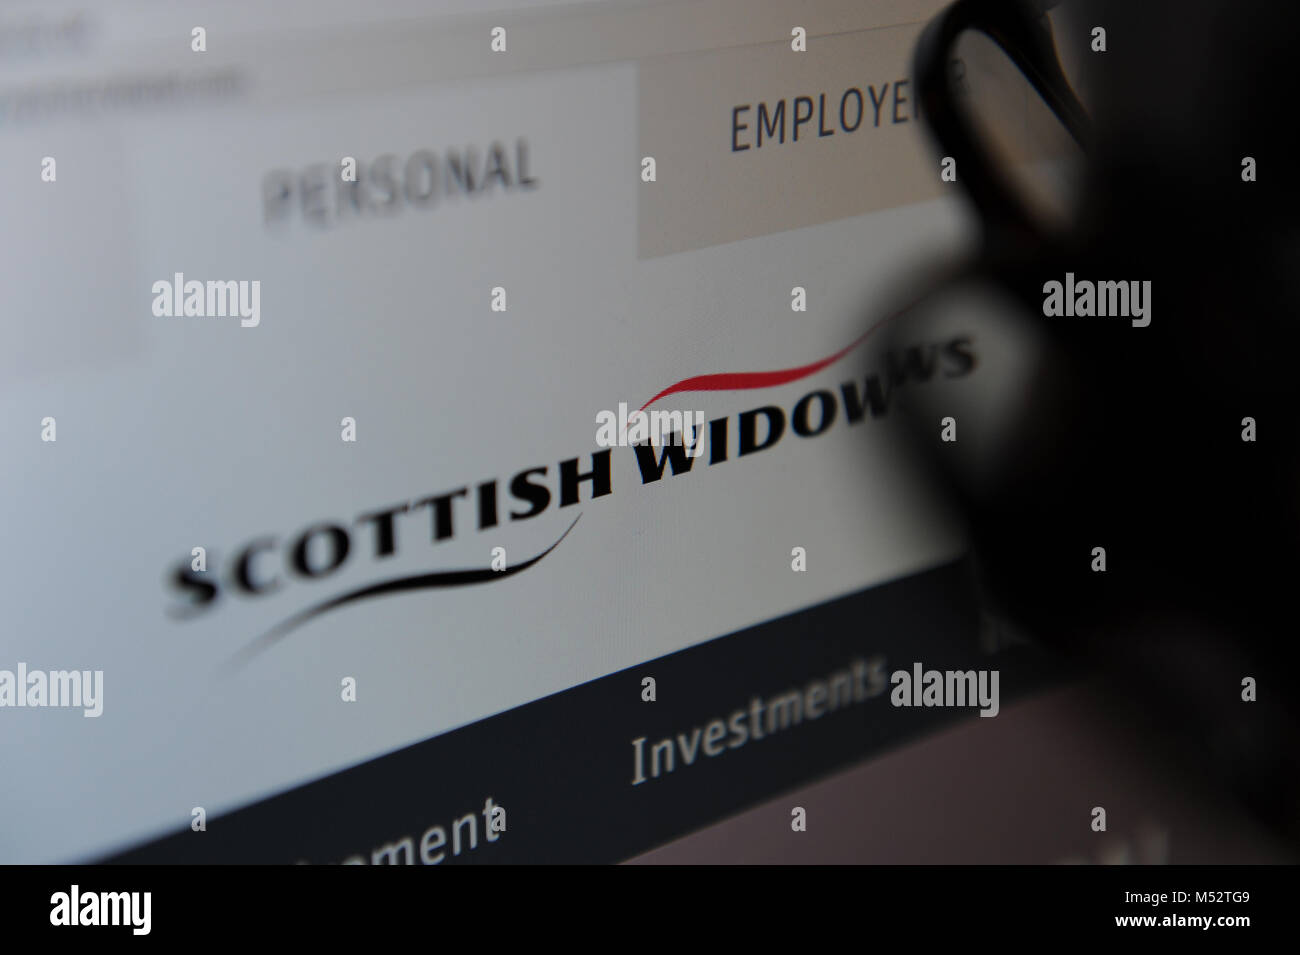 Scottish Widows Stock Photo